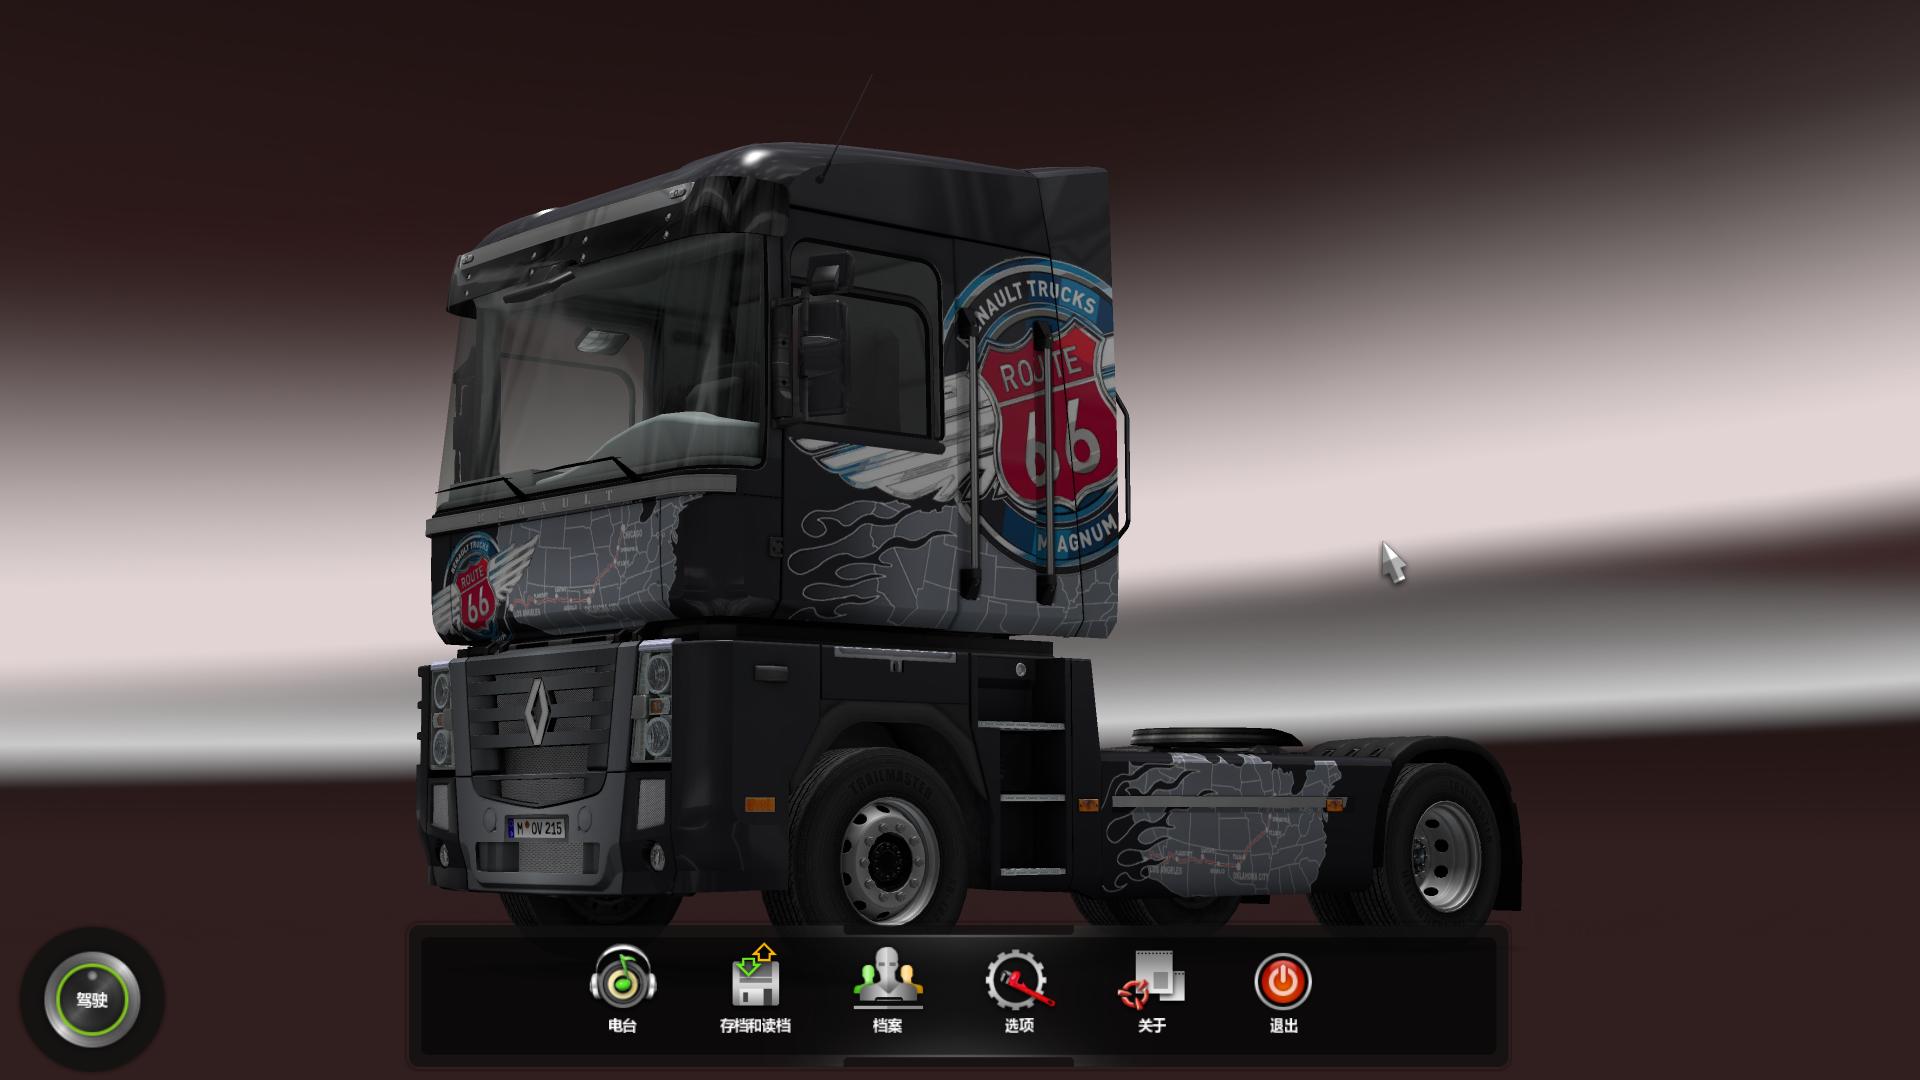 ŷ޿ģ2Euro Truck Simulator 2 v1.16.x-v1.32.xʮ޸FutureX